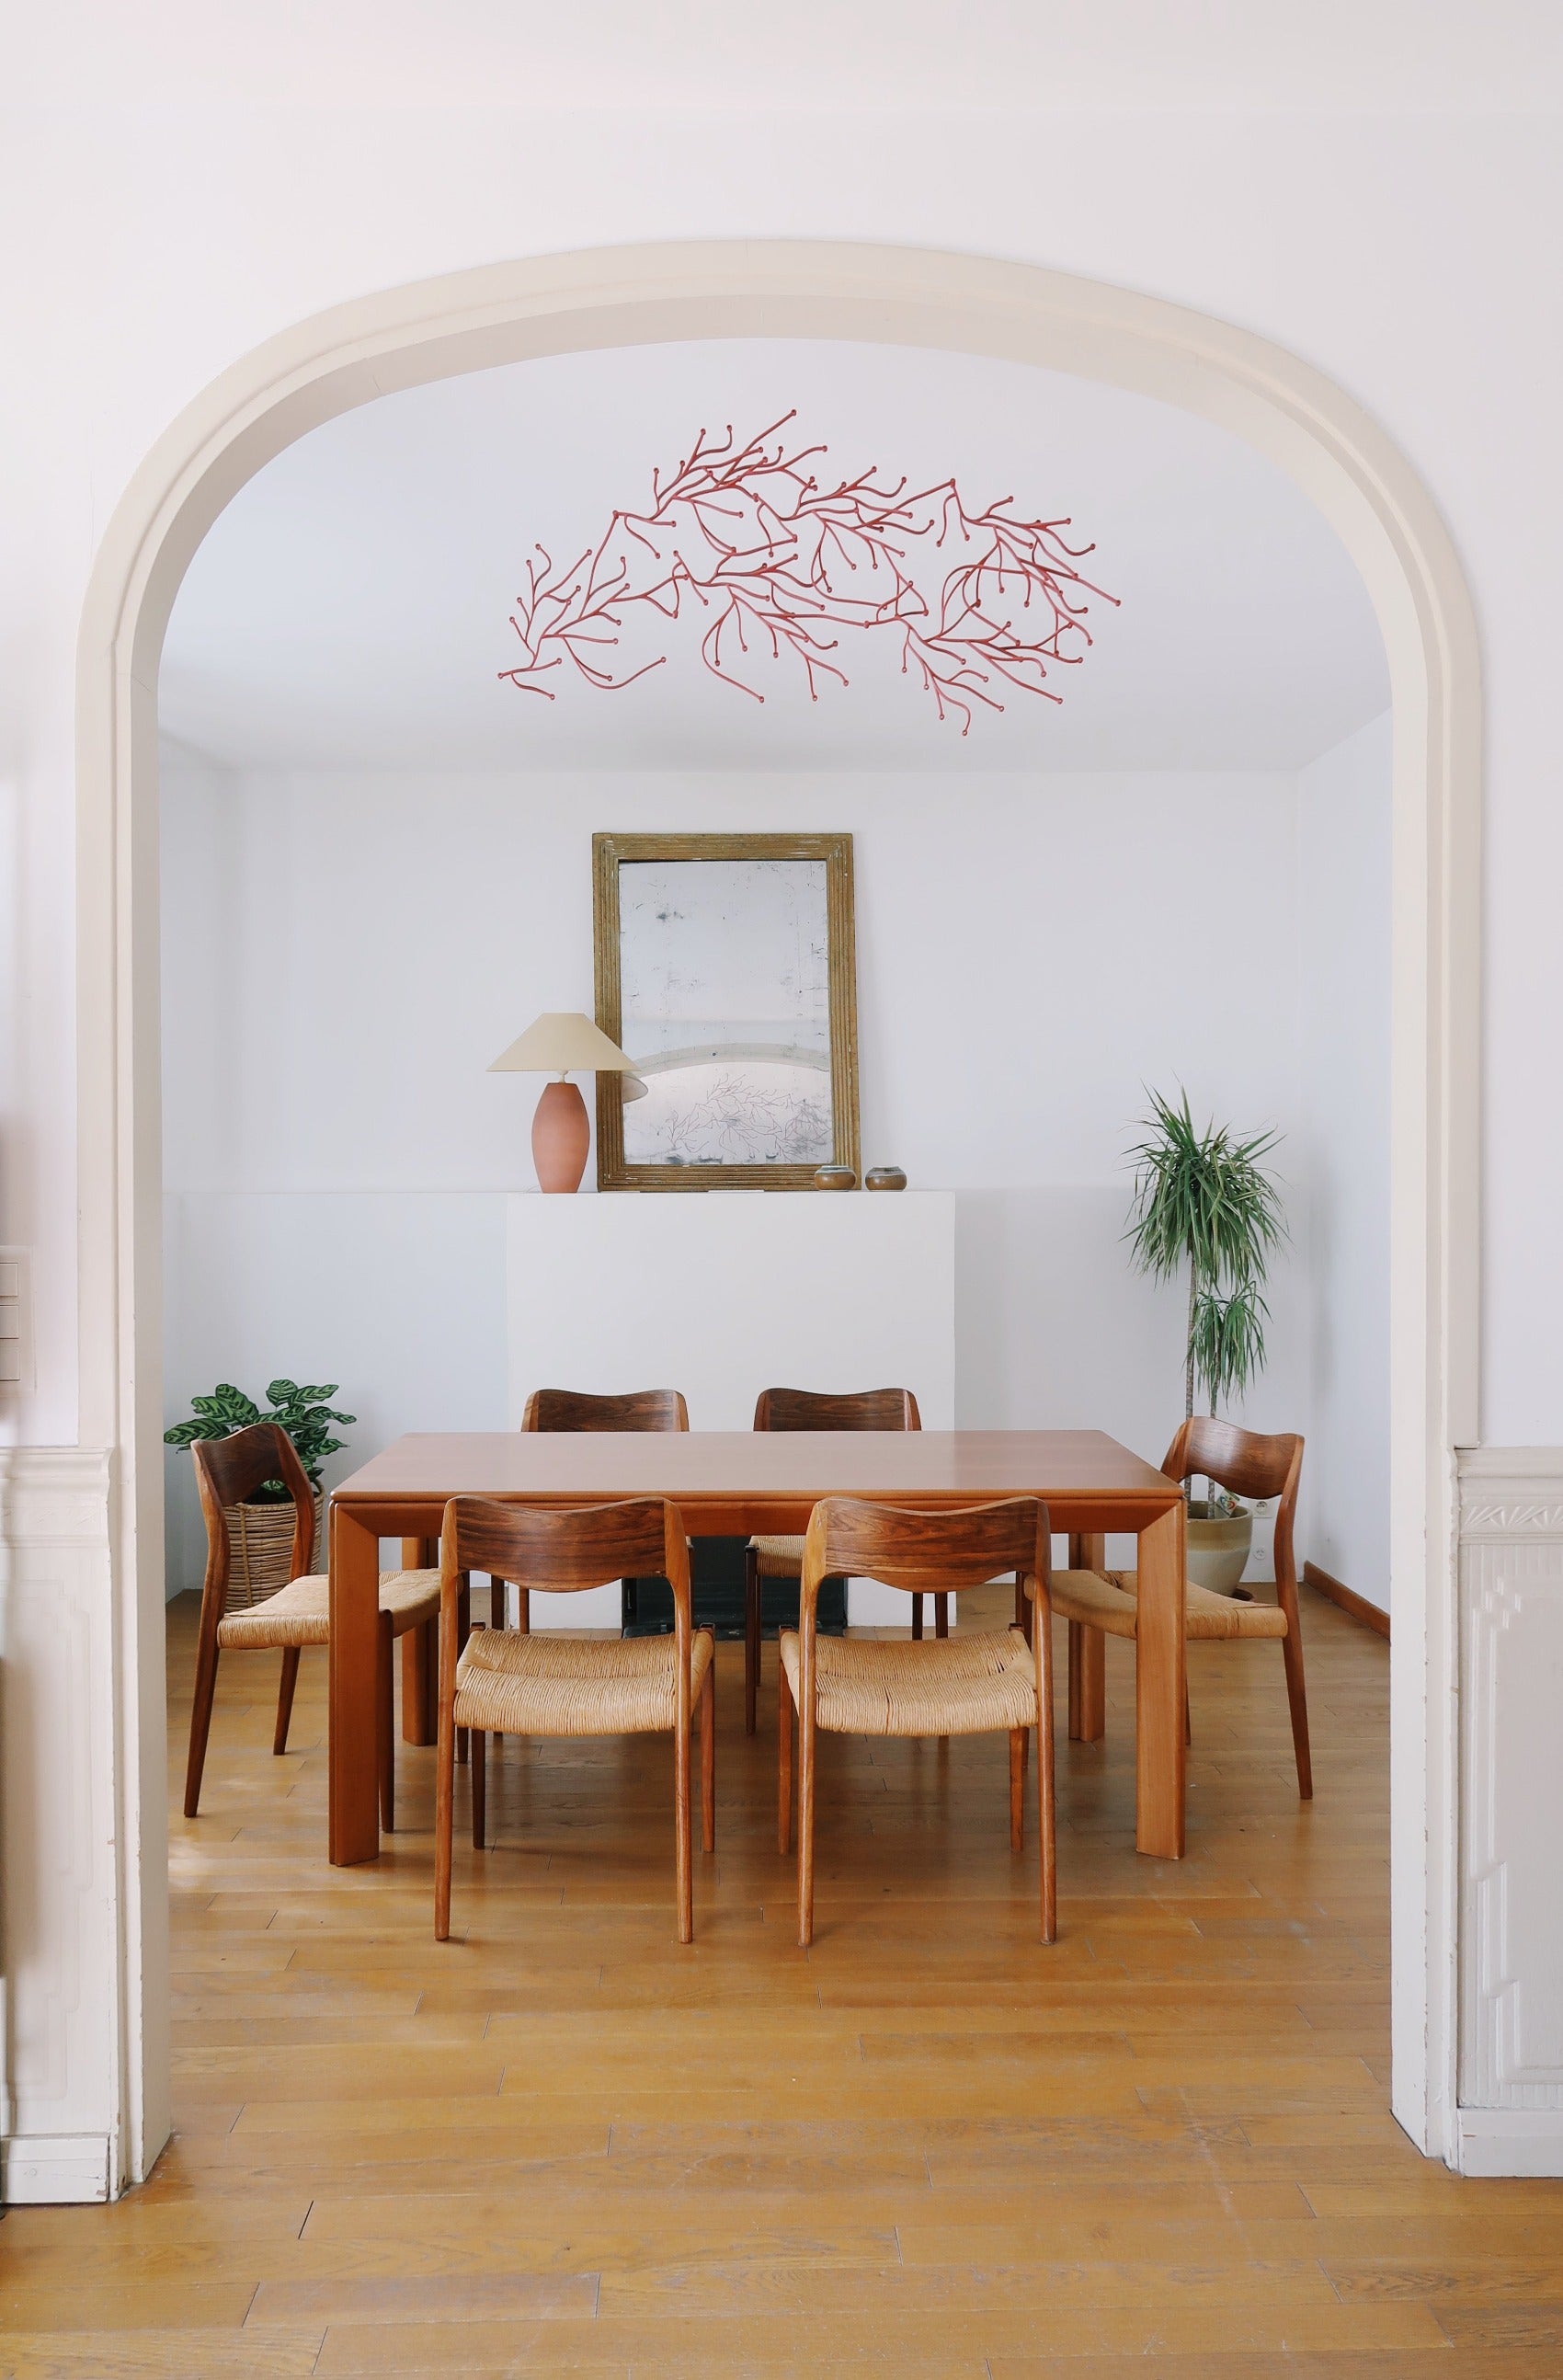 grande table à manger scandinave charlotte perriand maison regain années 80 bois clair vintage ferme danois massif